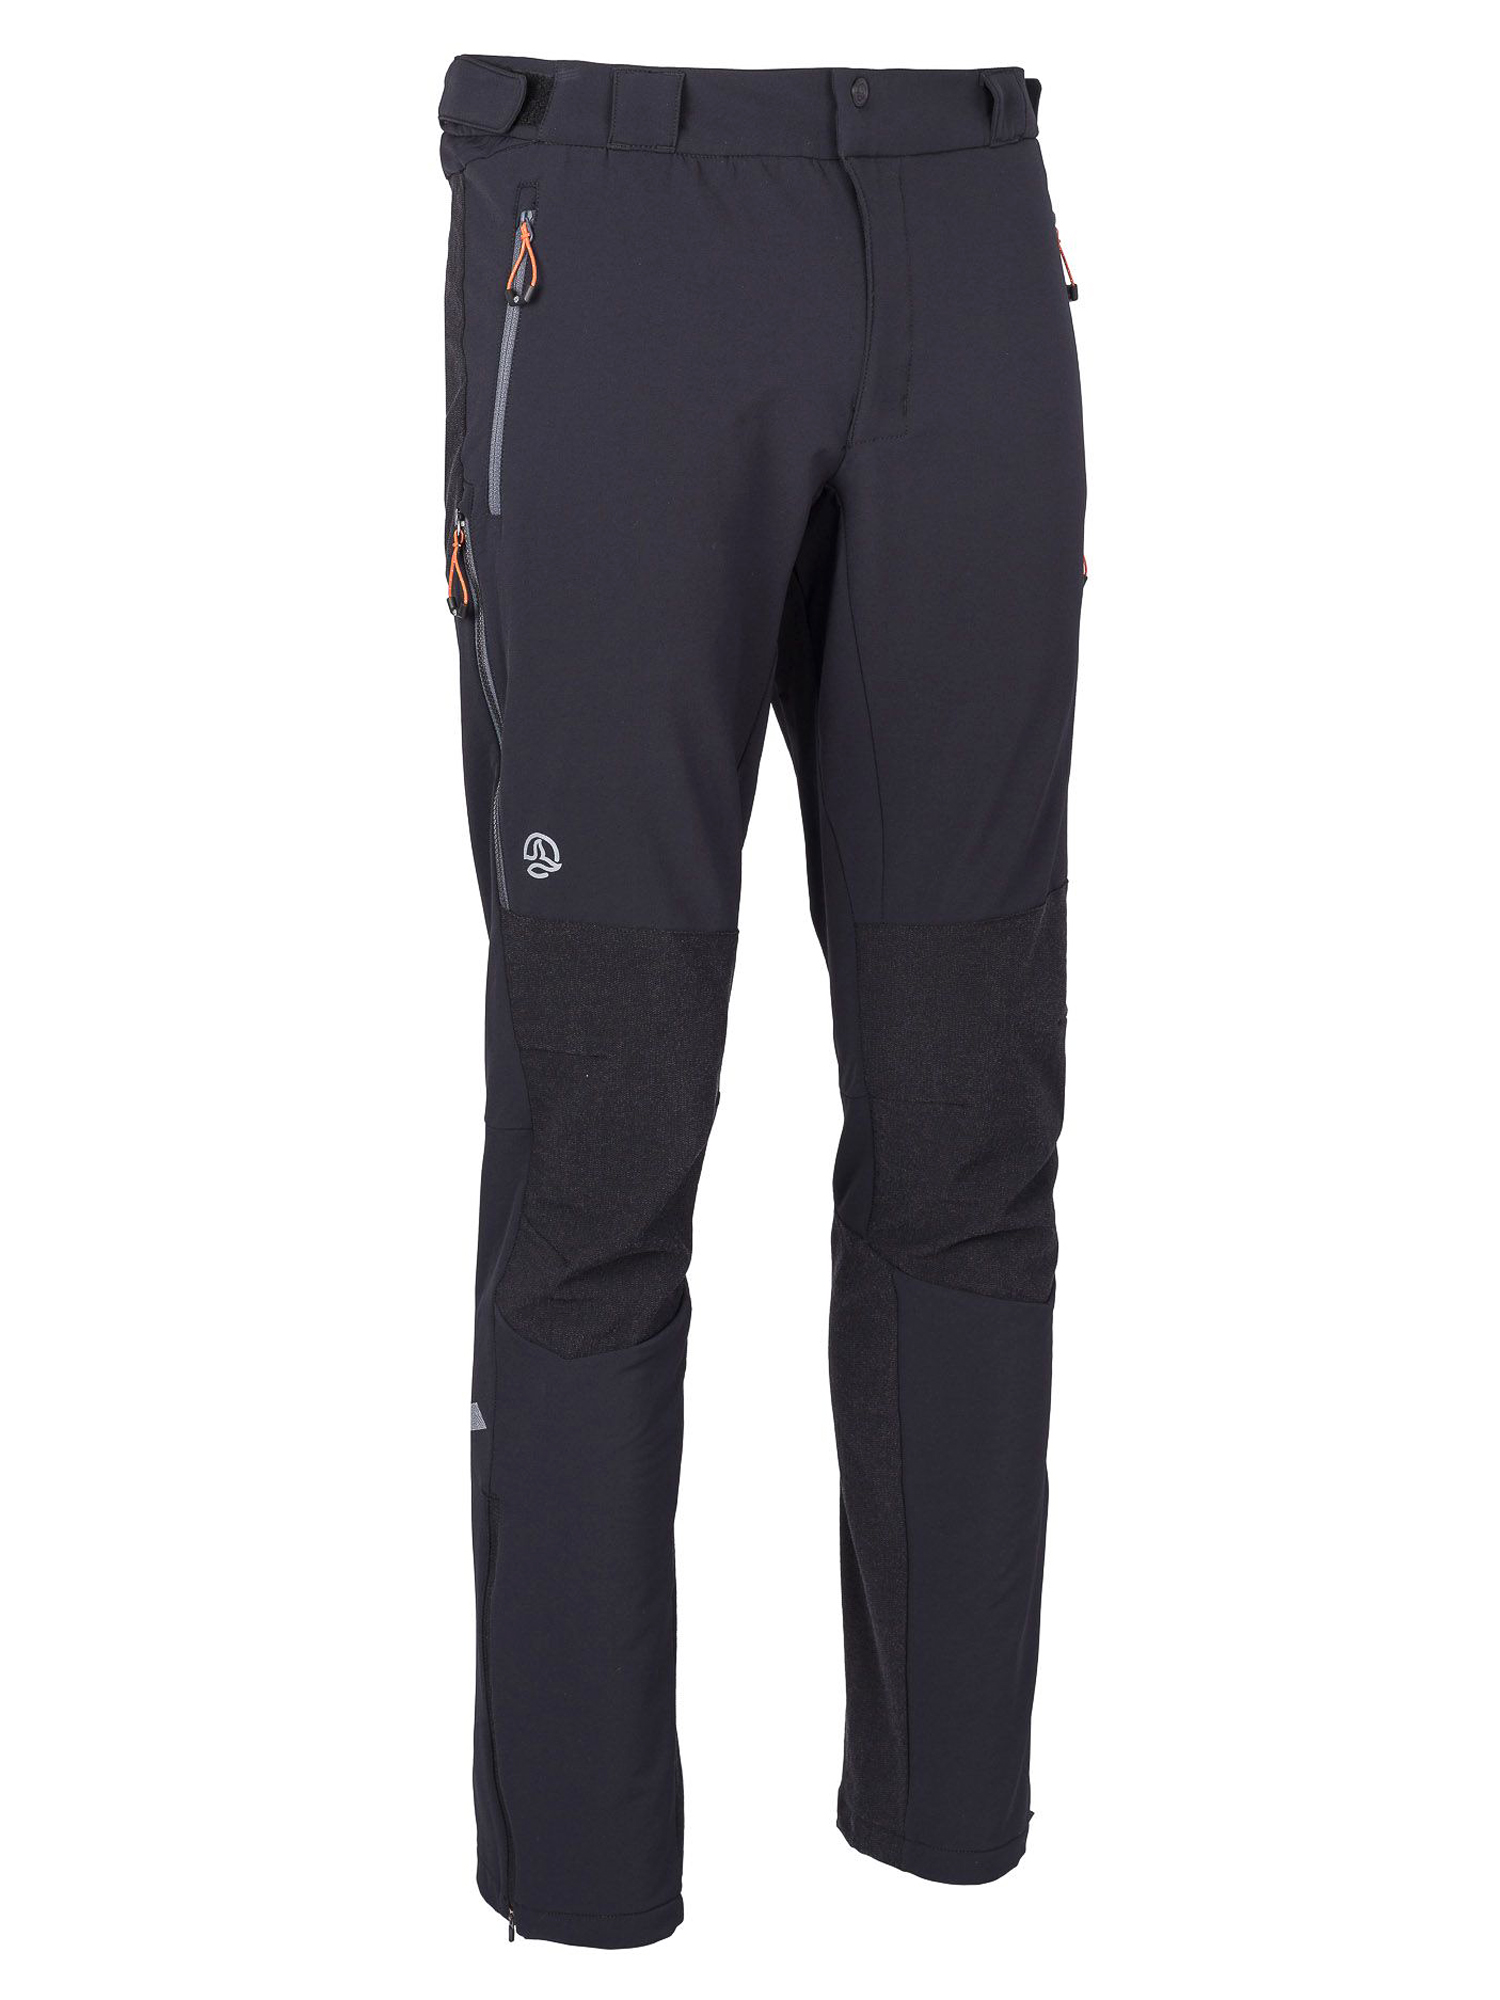 фото Спортивные брюки мужские ternua elbrus pt m черные xl